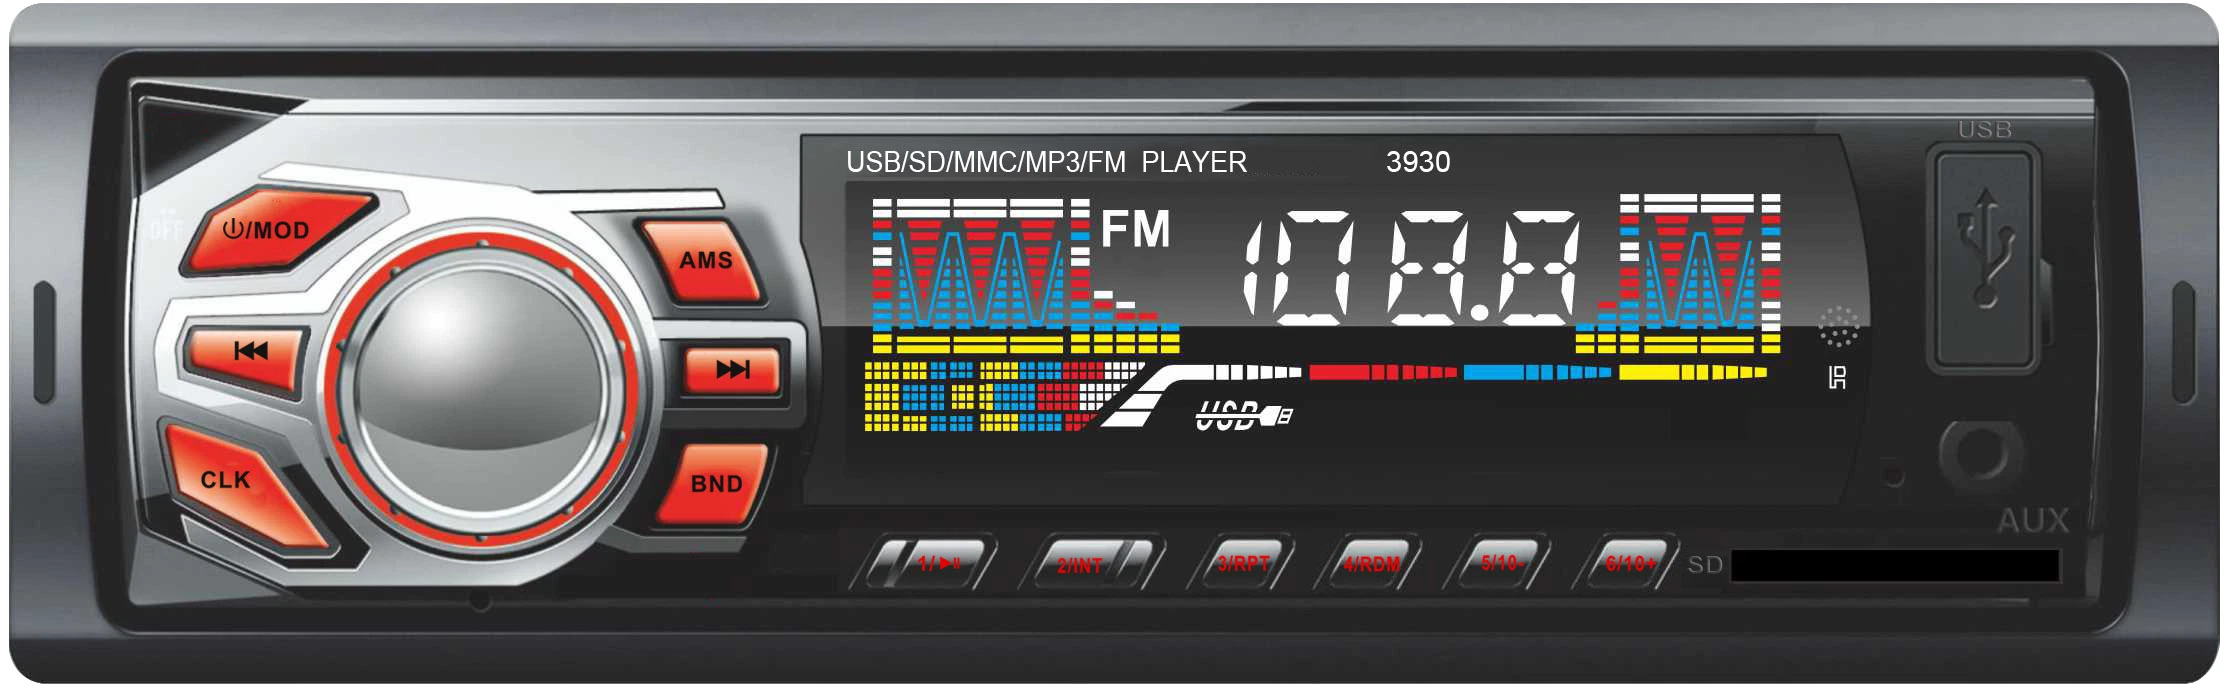 Double voiture USB MP3 lecteur audio multimédia Bluetooth